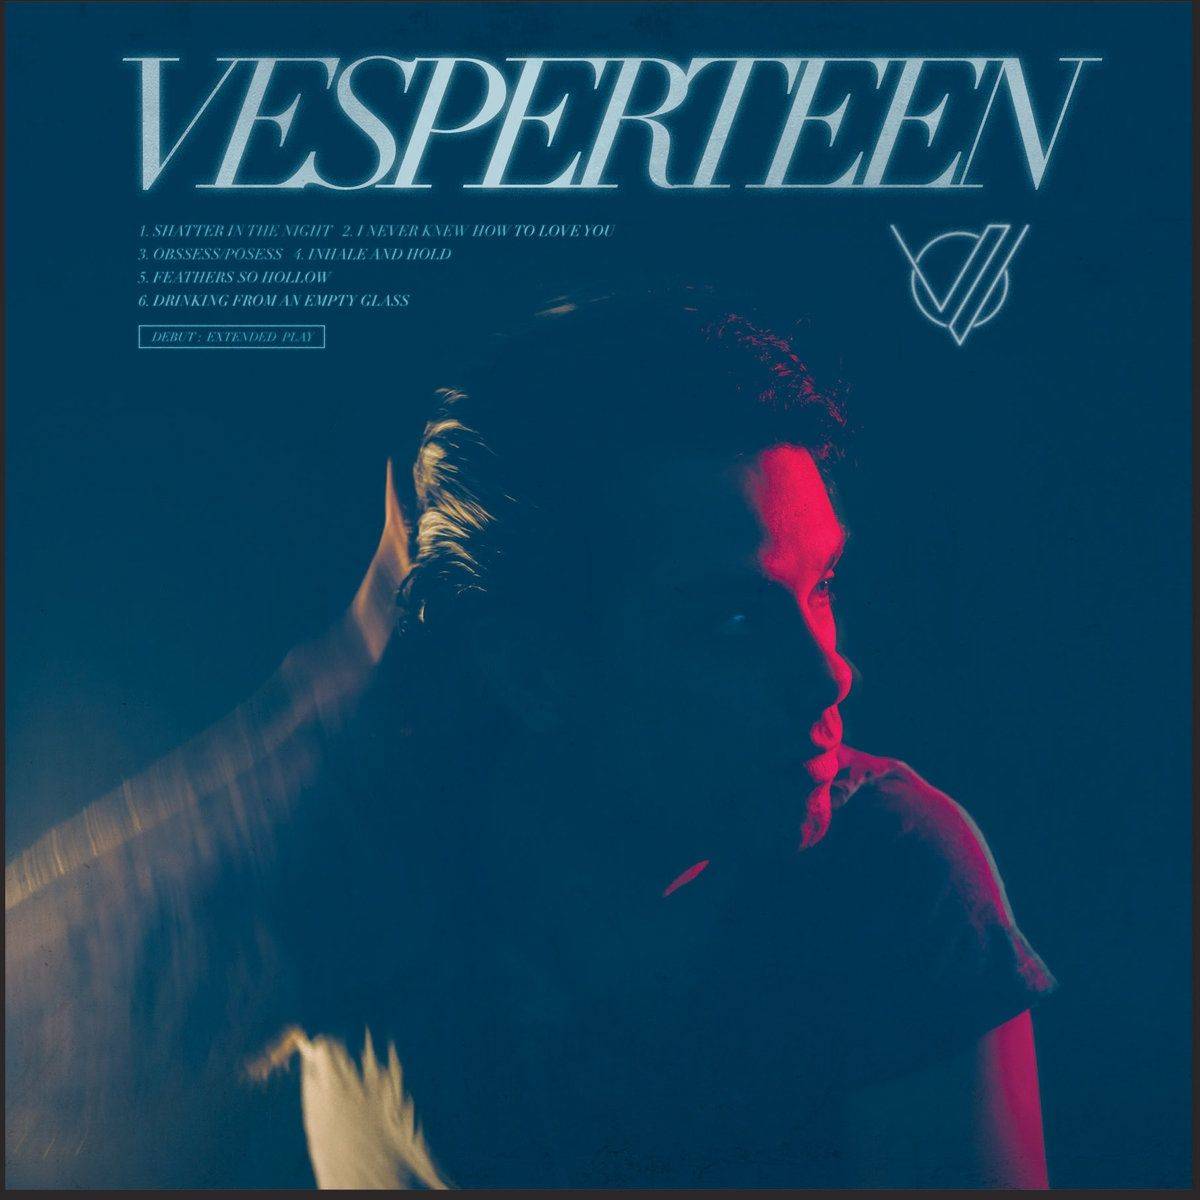 Vesperteen (EP)